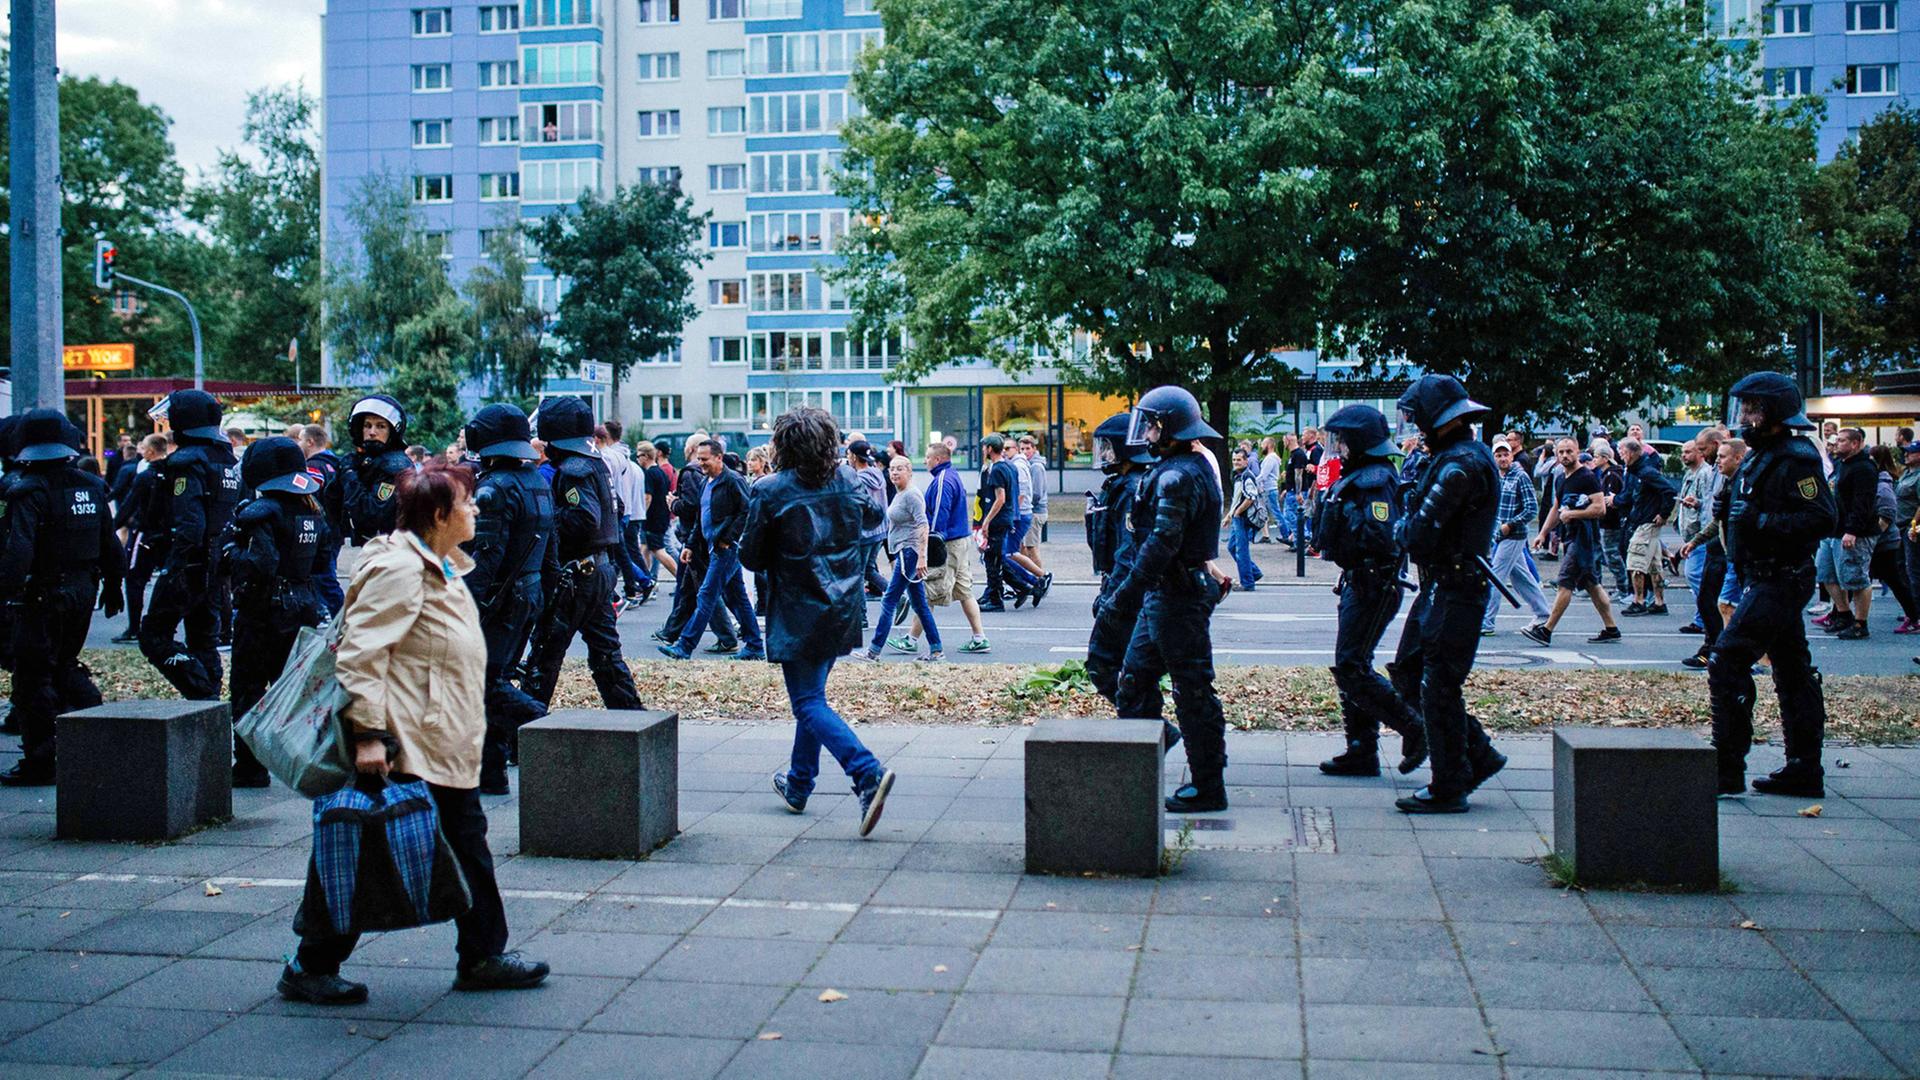 Polizisten im Einsatz bei einer Pro Chemnitz Veranstaltung am 27.8.2018